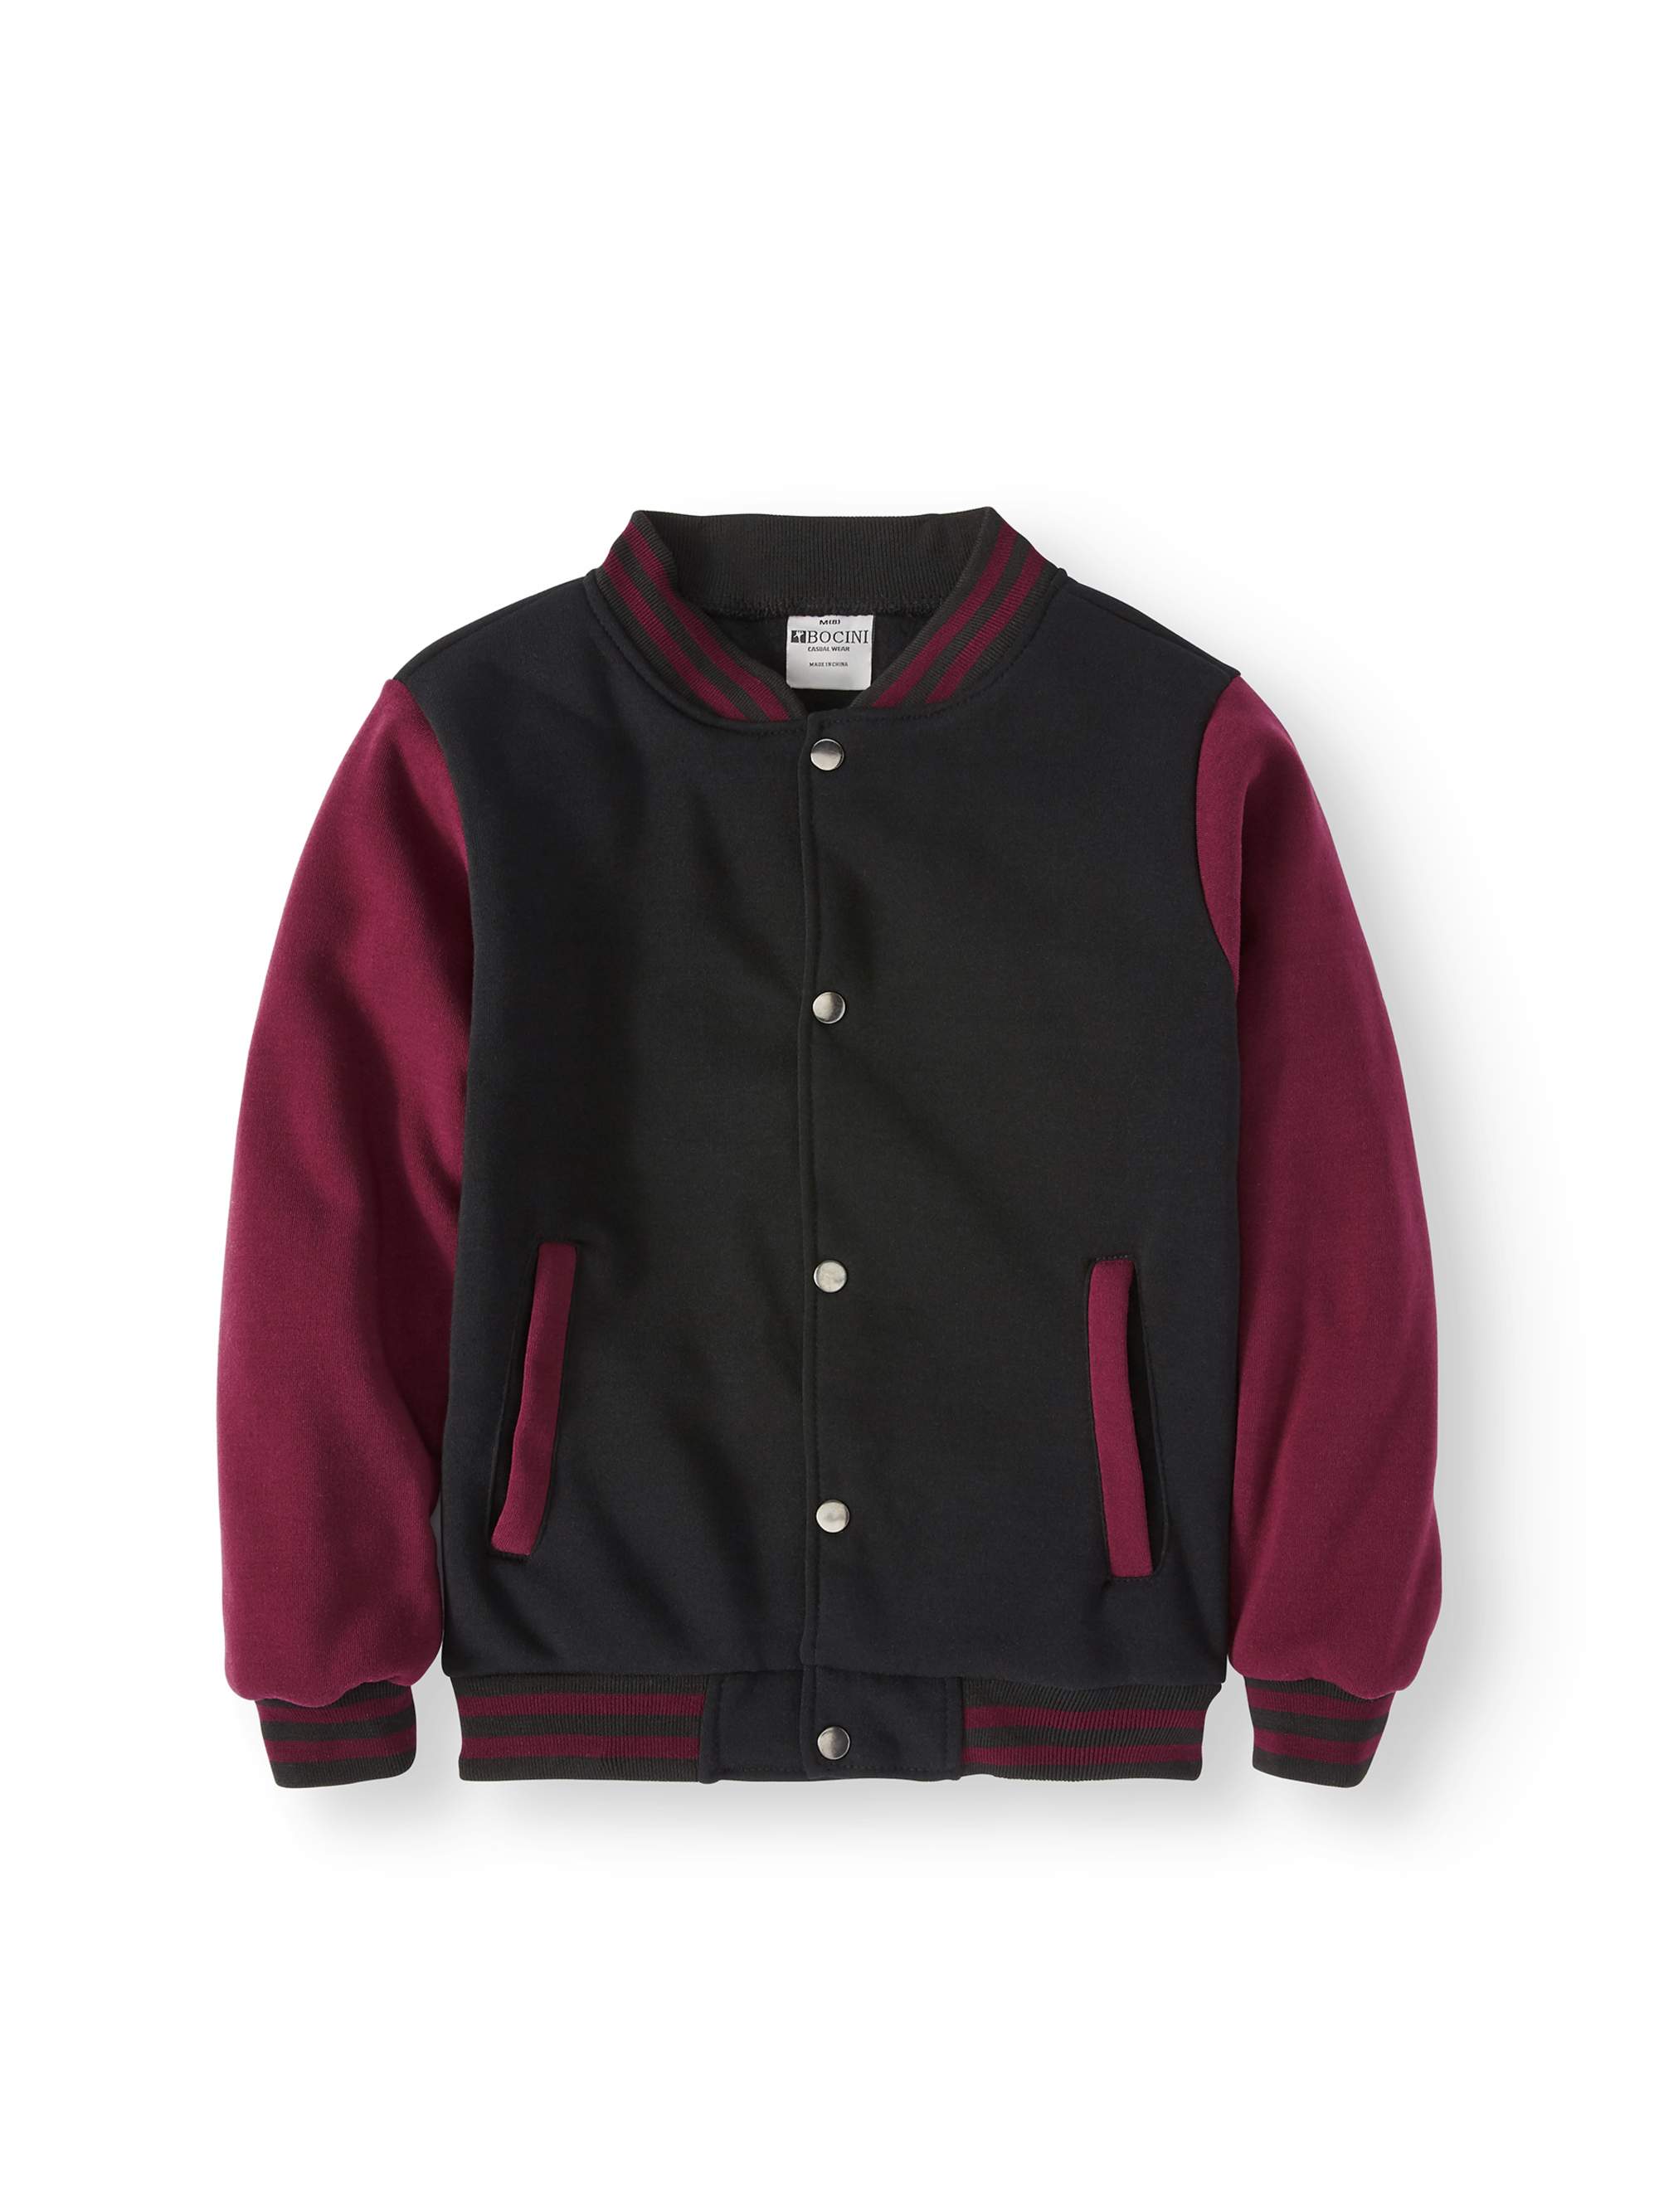 Bocini Boys Unlined Fleece Varsity Jackets, Sizes 6-16 - image 1 of 3